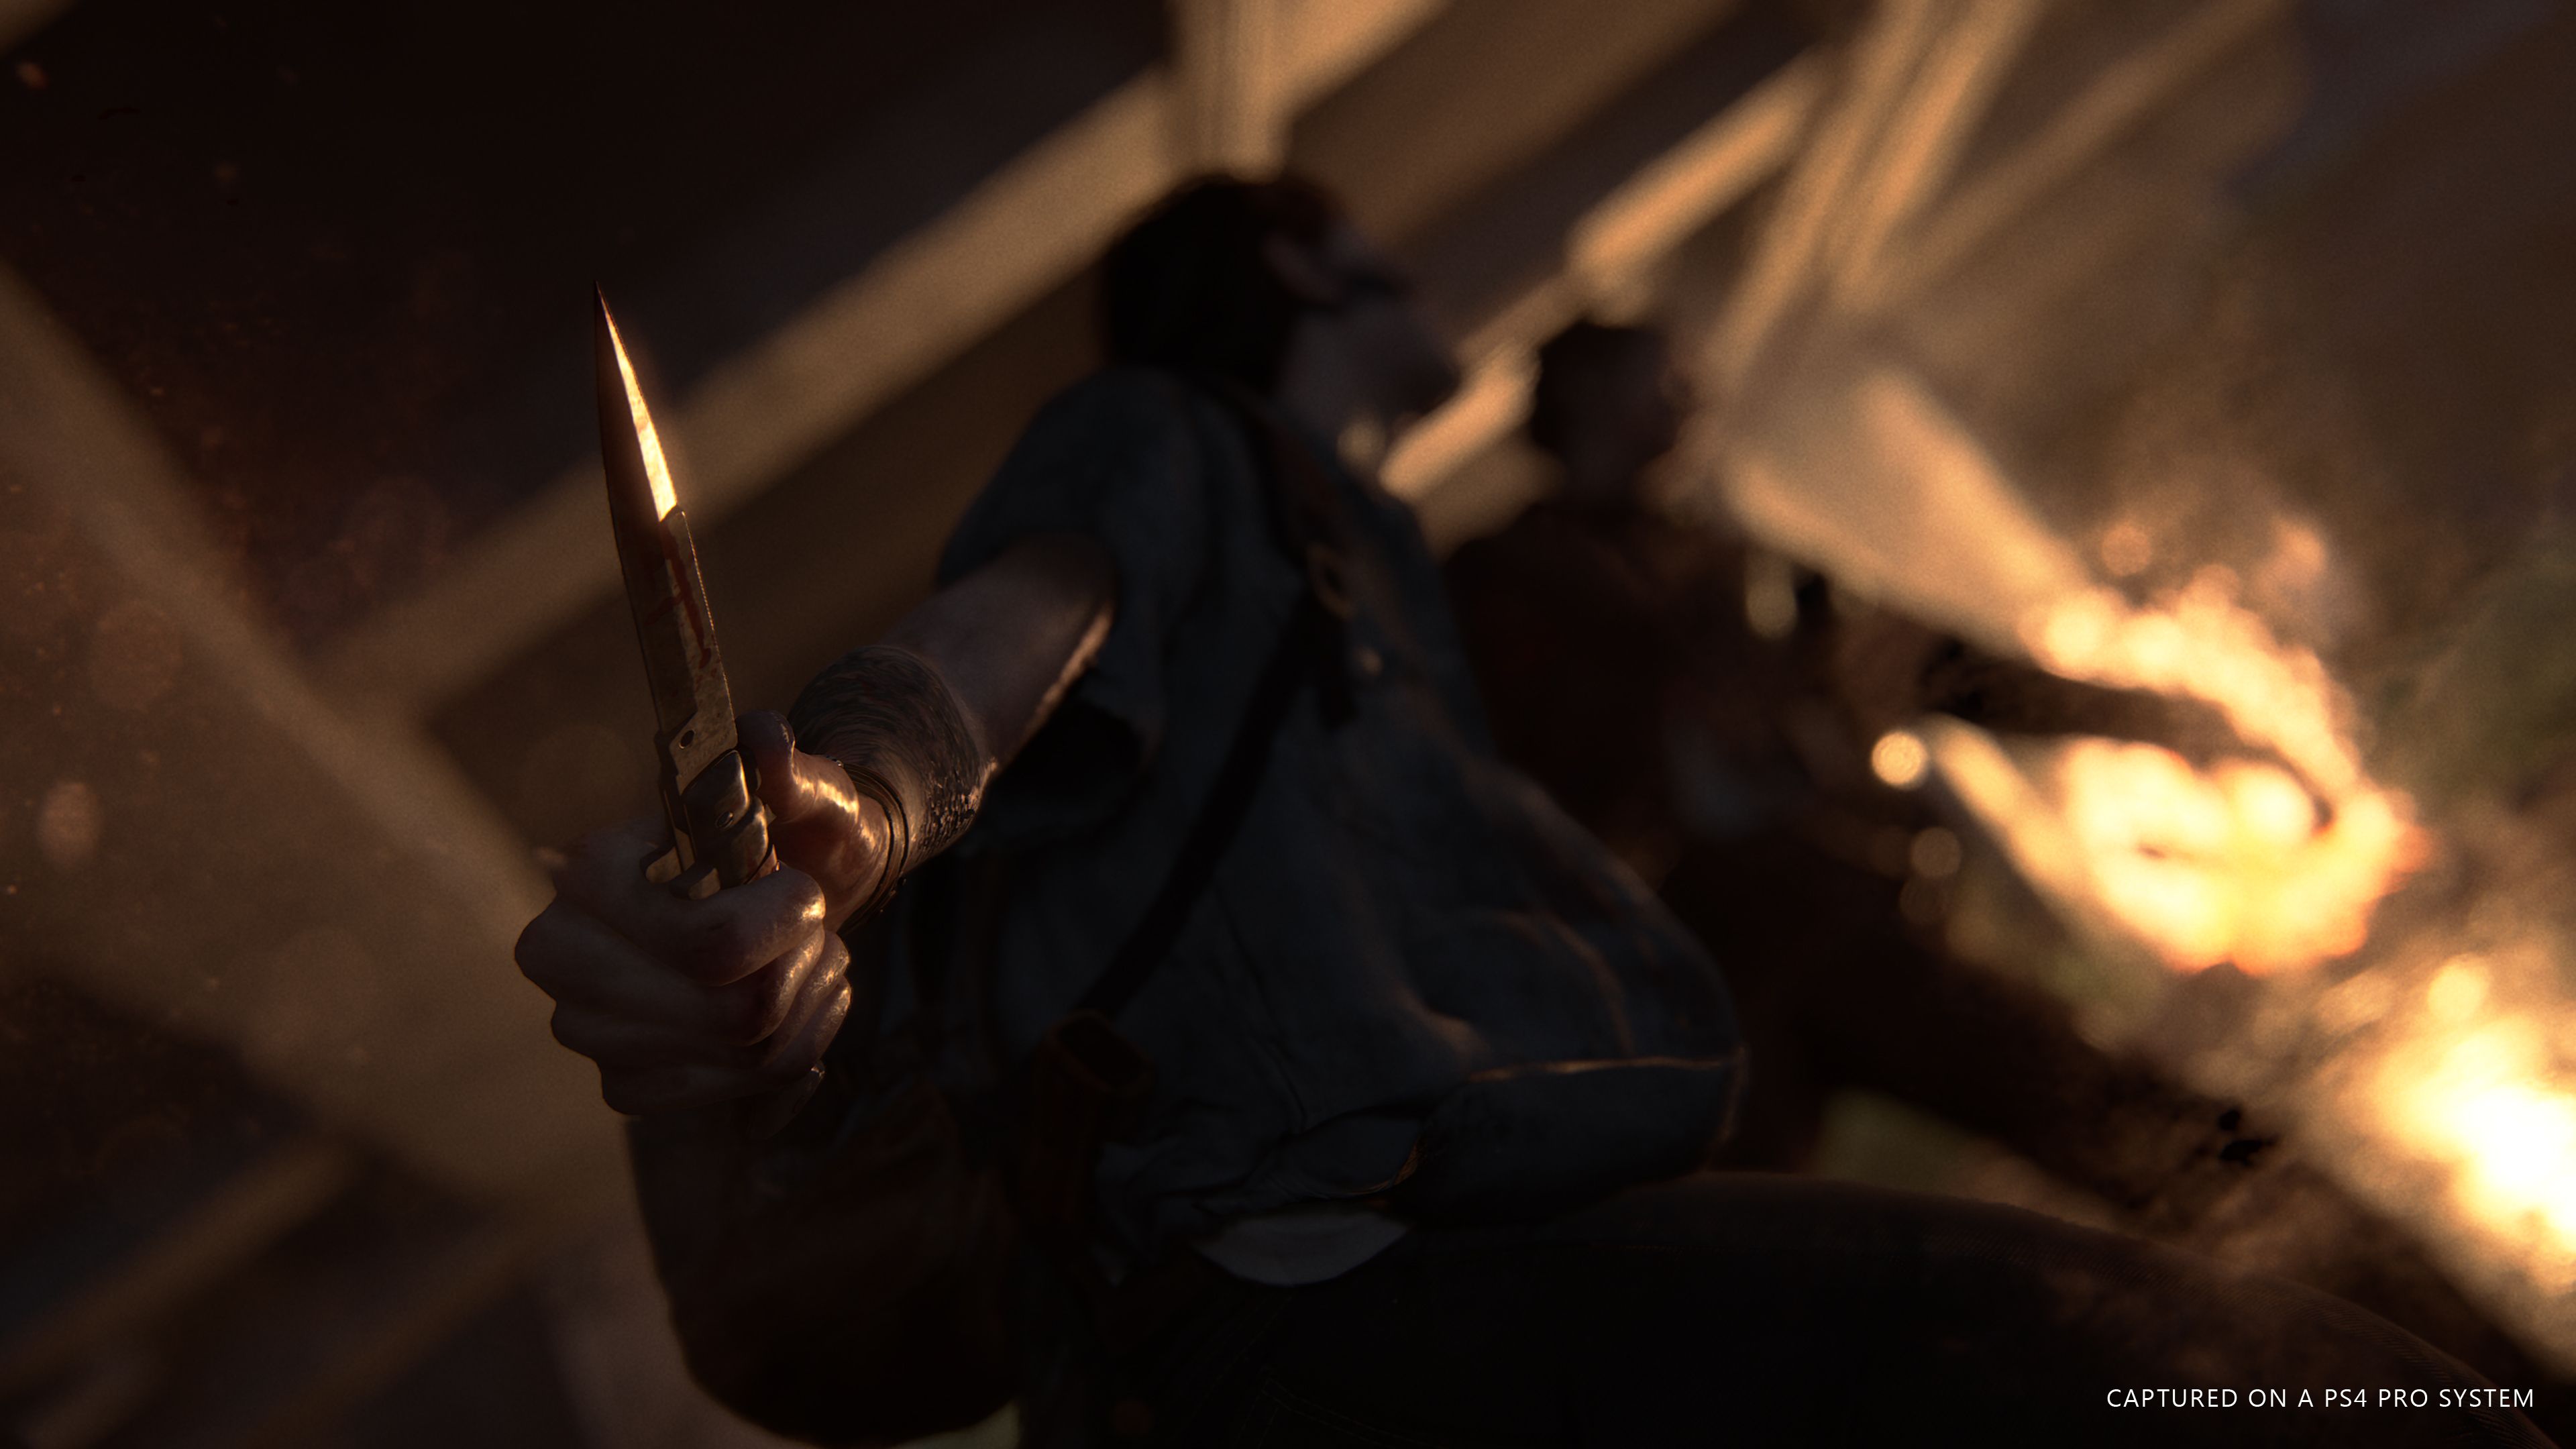 Ellie (The Last of Us) 4k Ultra HD Wallpaper